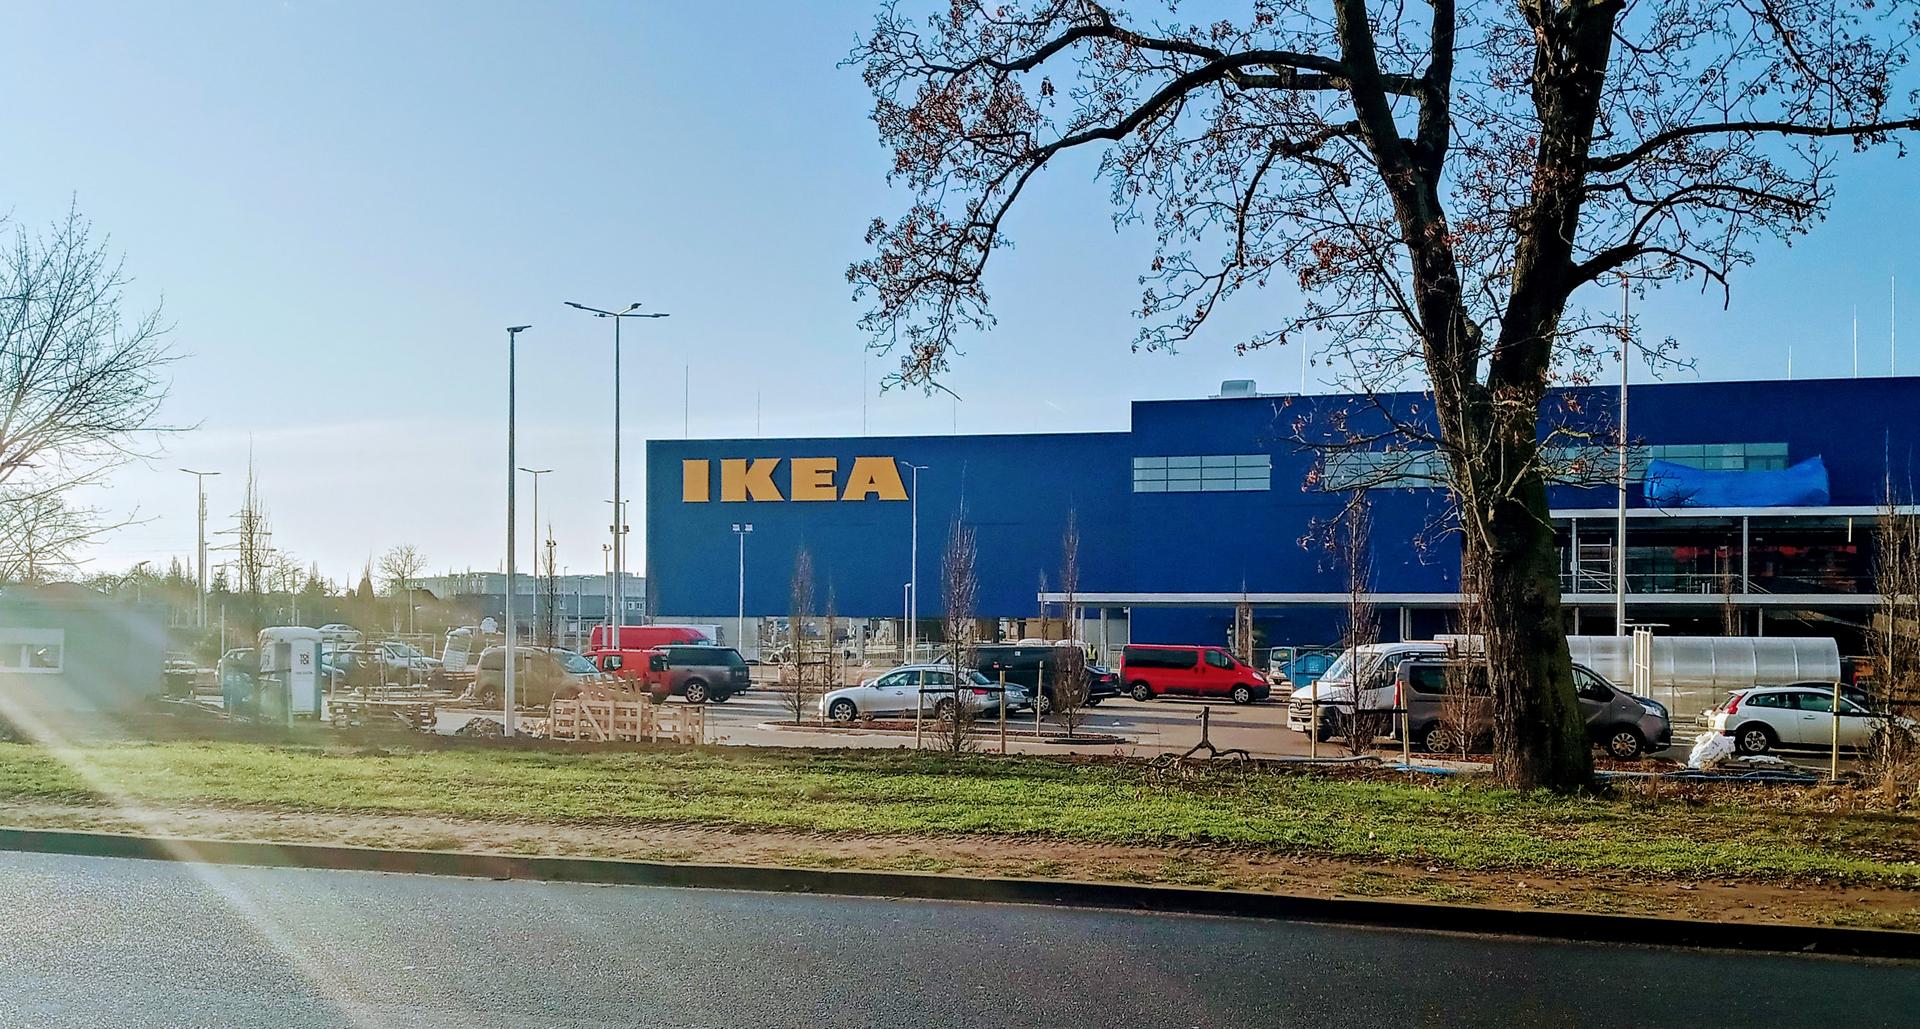 Ikea W Szczecinie Prawie Na Finiszu Kiedy Otwarcie Sprawdz Oferty Pracy Zdjecia Szczecin Super Express